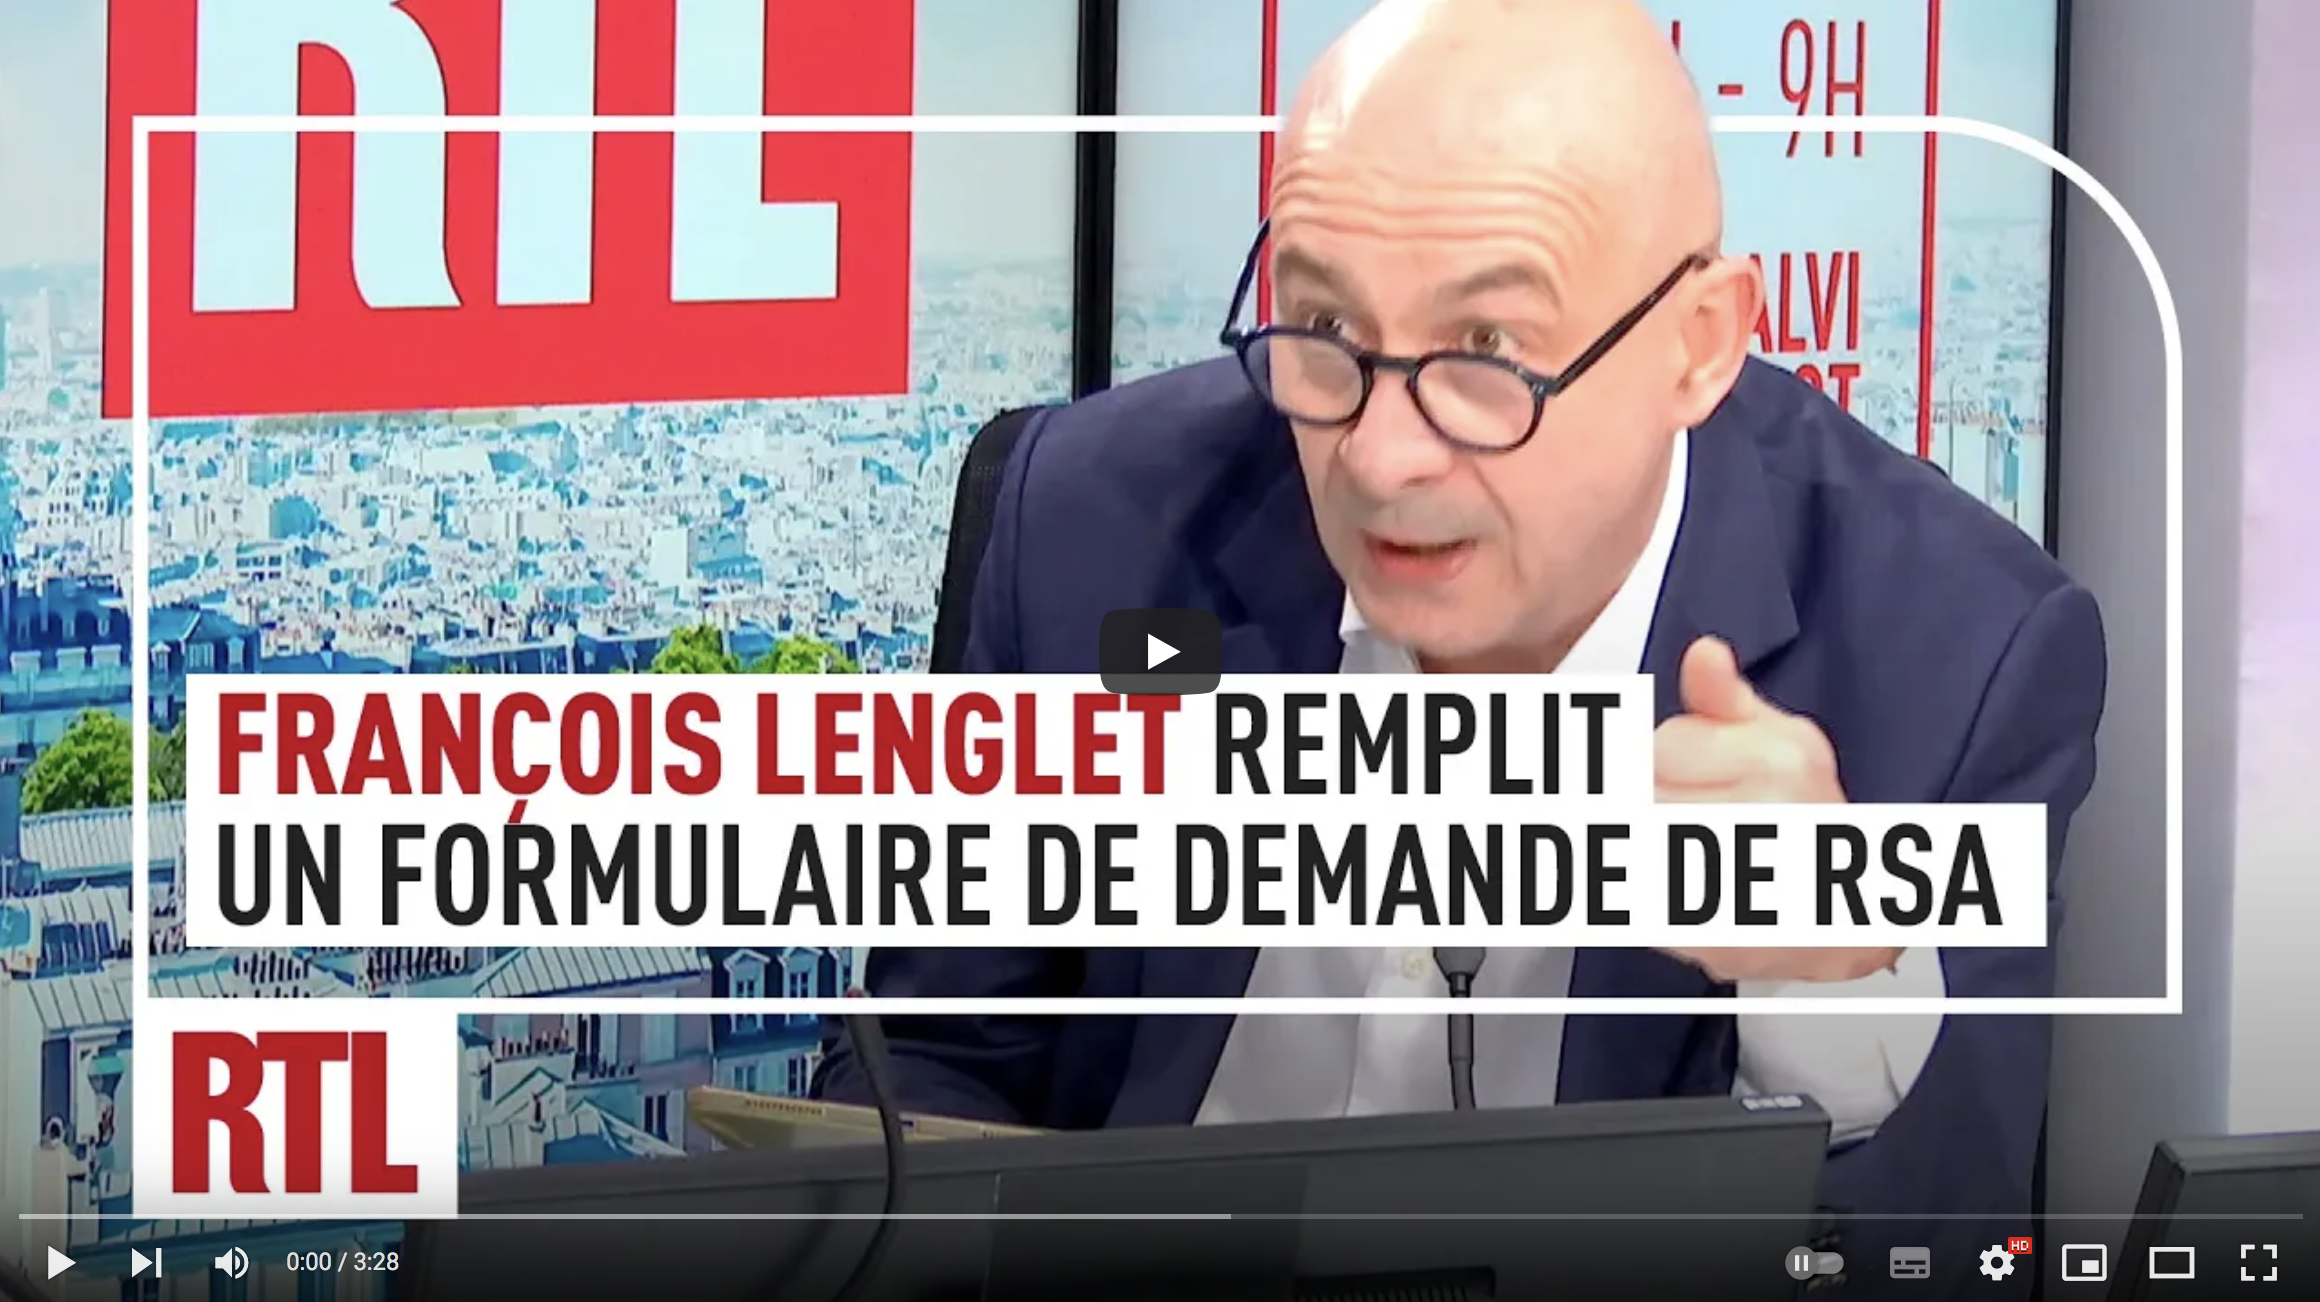 François Lenglet tente de remplir un formulaire de demande du RSA : “C’est du charabia, il faut l’aide d’un conseiller fiscal” (VIDÉO)